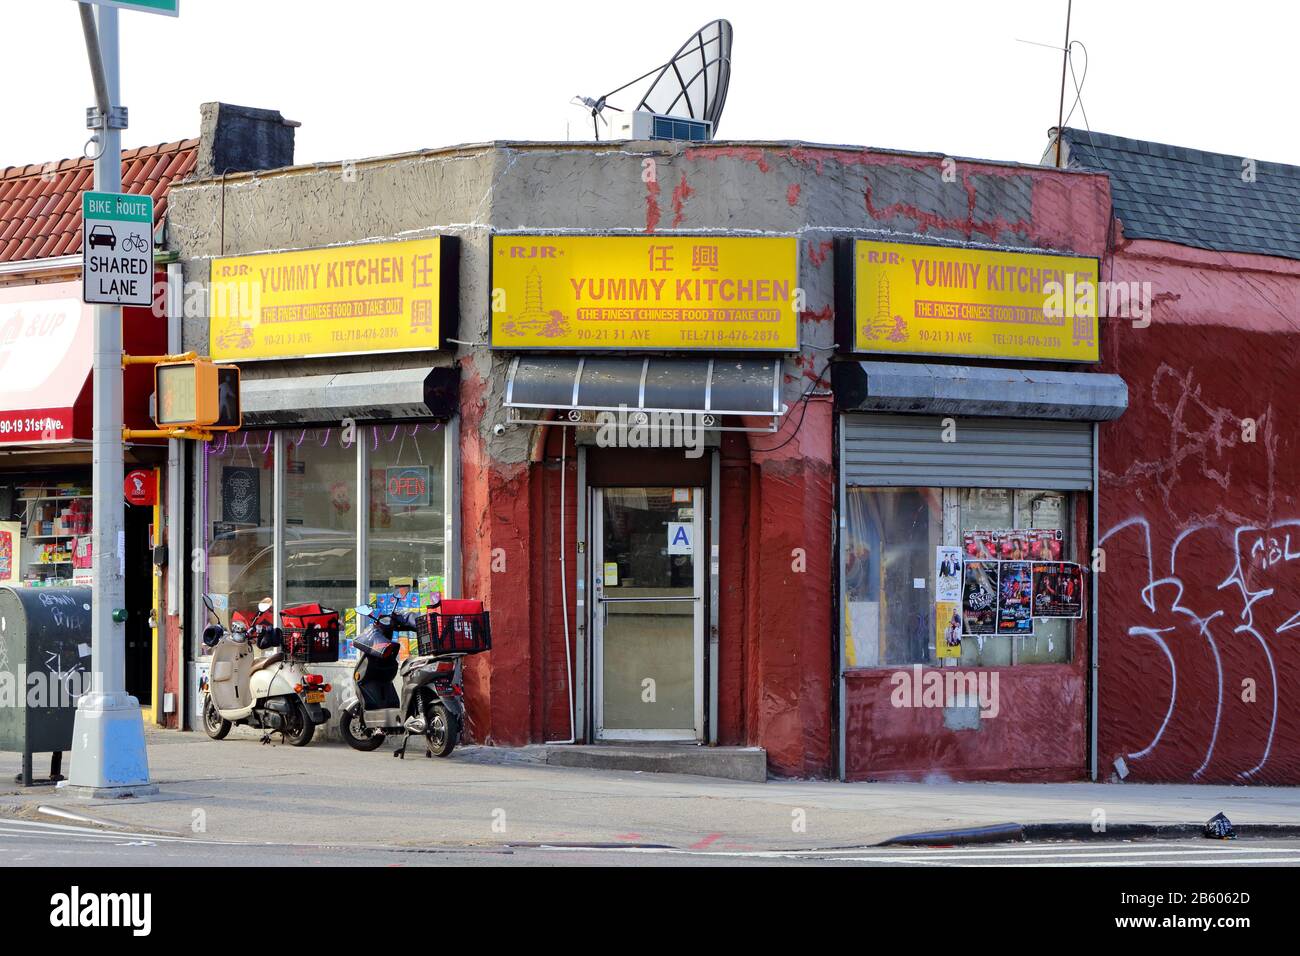 RJR Yummy Kitchen, 90-21 31. Ave, Queens, New York. NYC-Schaufensterfoto eines chinesischen Restaurants zum Mitnehmen in East Elmhurst. Stockfoto